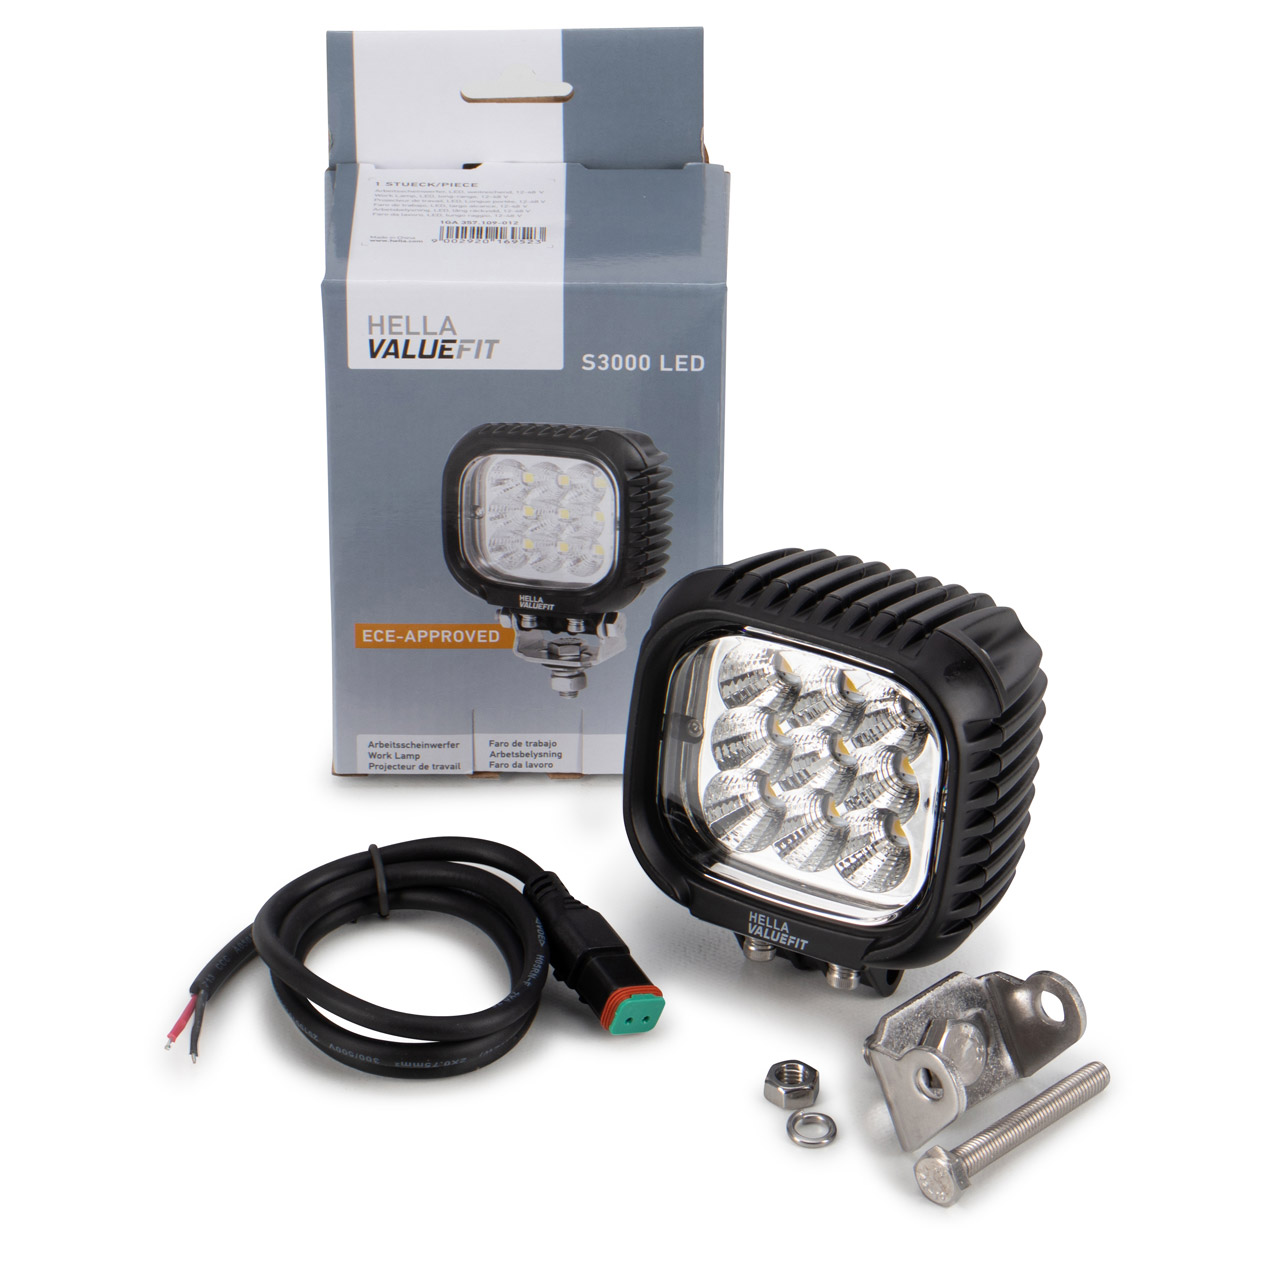 HELLA 1GA357109-012 LED Arbeitsscheinwerfer Arbeitsleuchte S3000 Valuefit 31W 3000lm 6000K